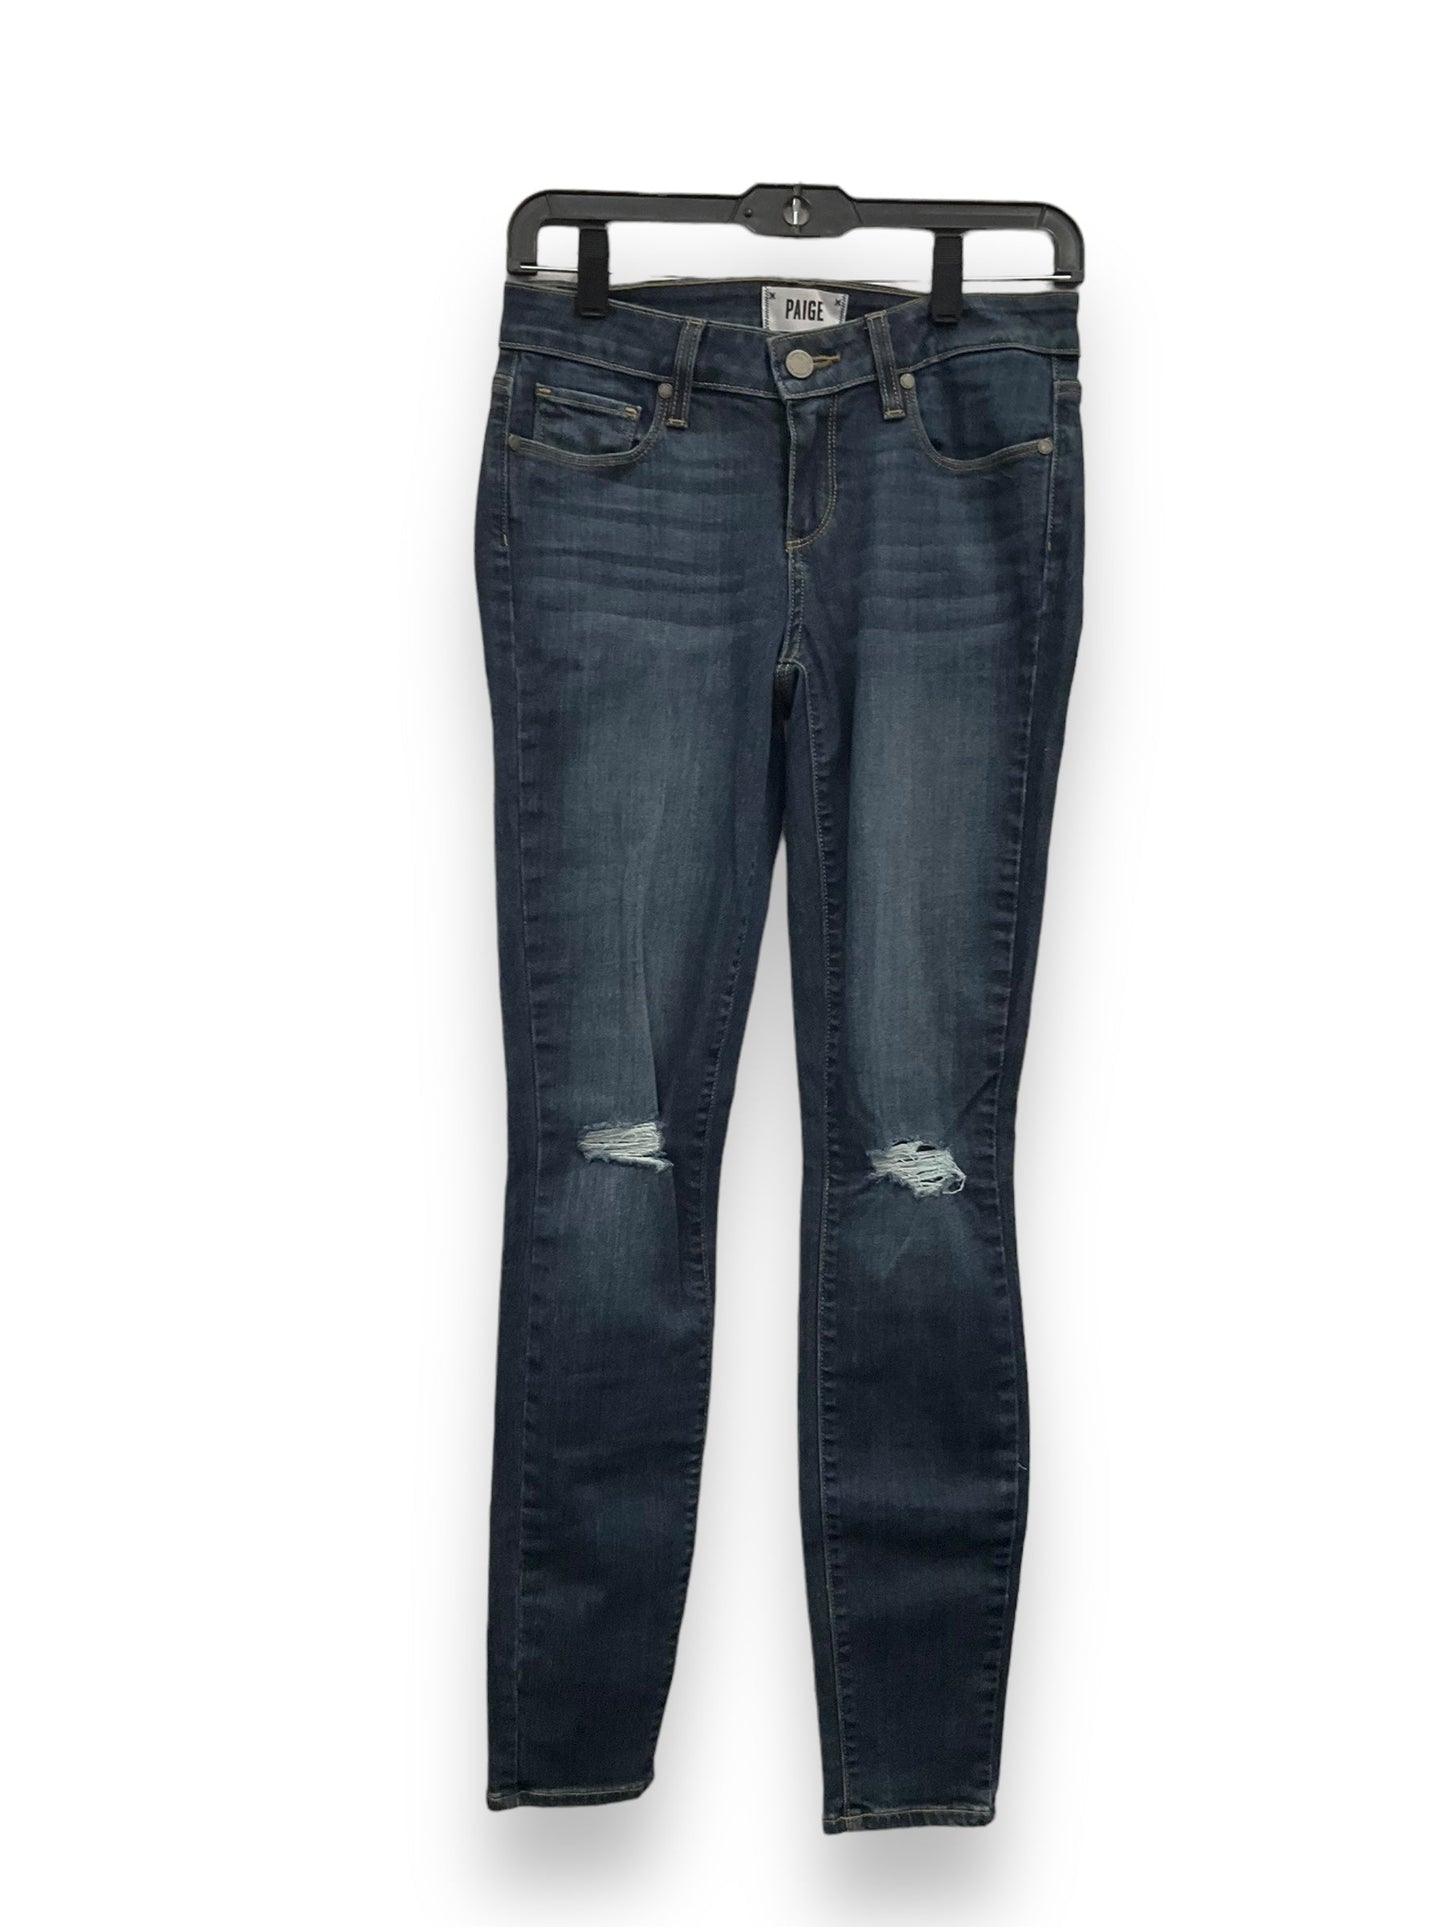 Blue Denim Jeans Straight Paige, Size 2